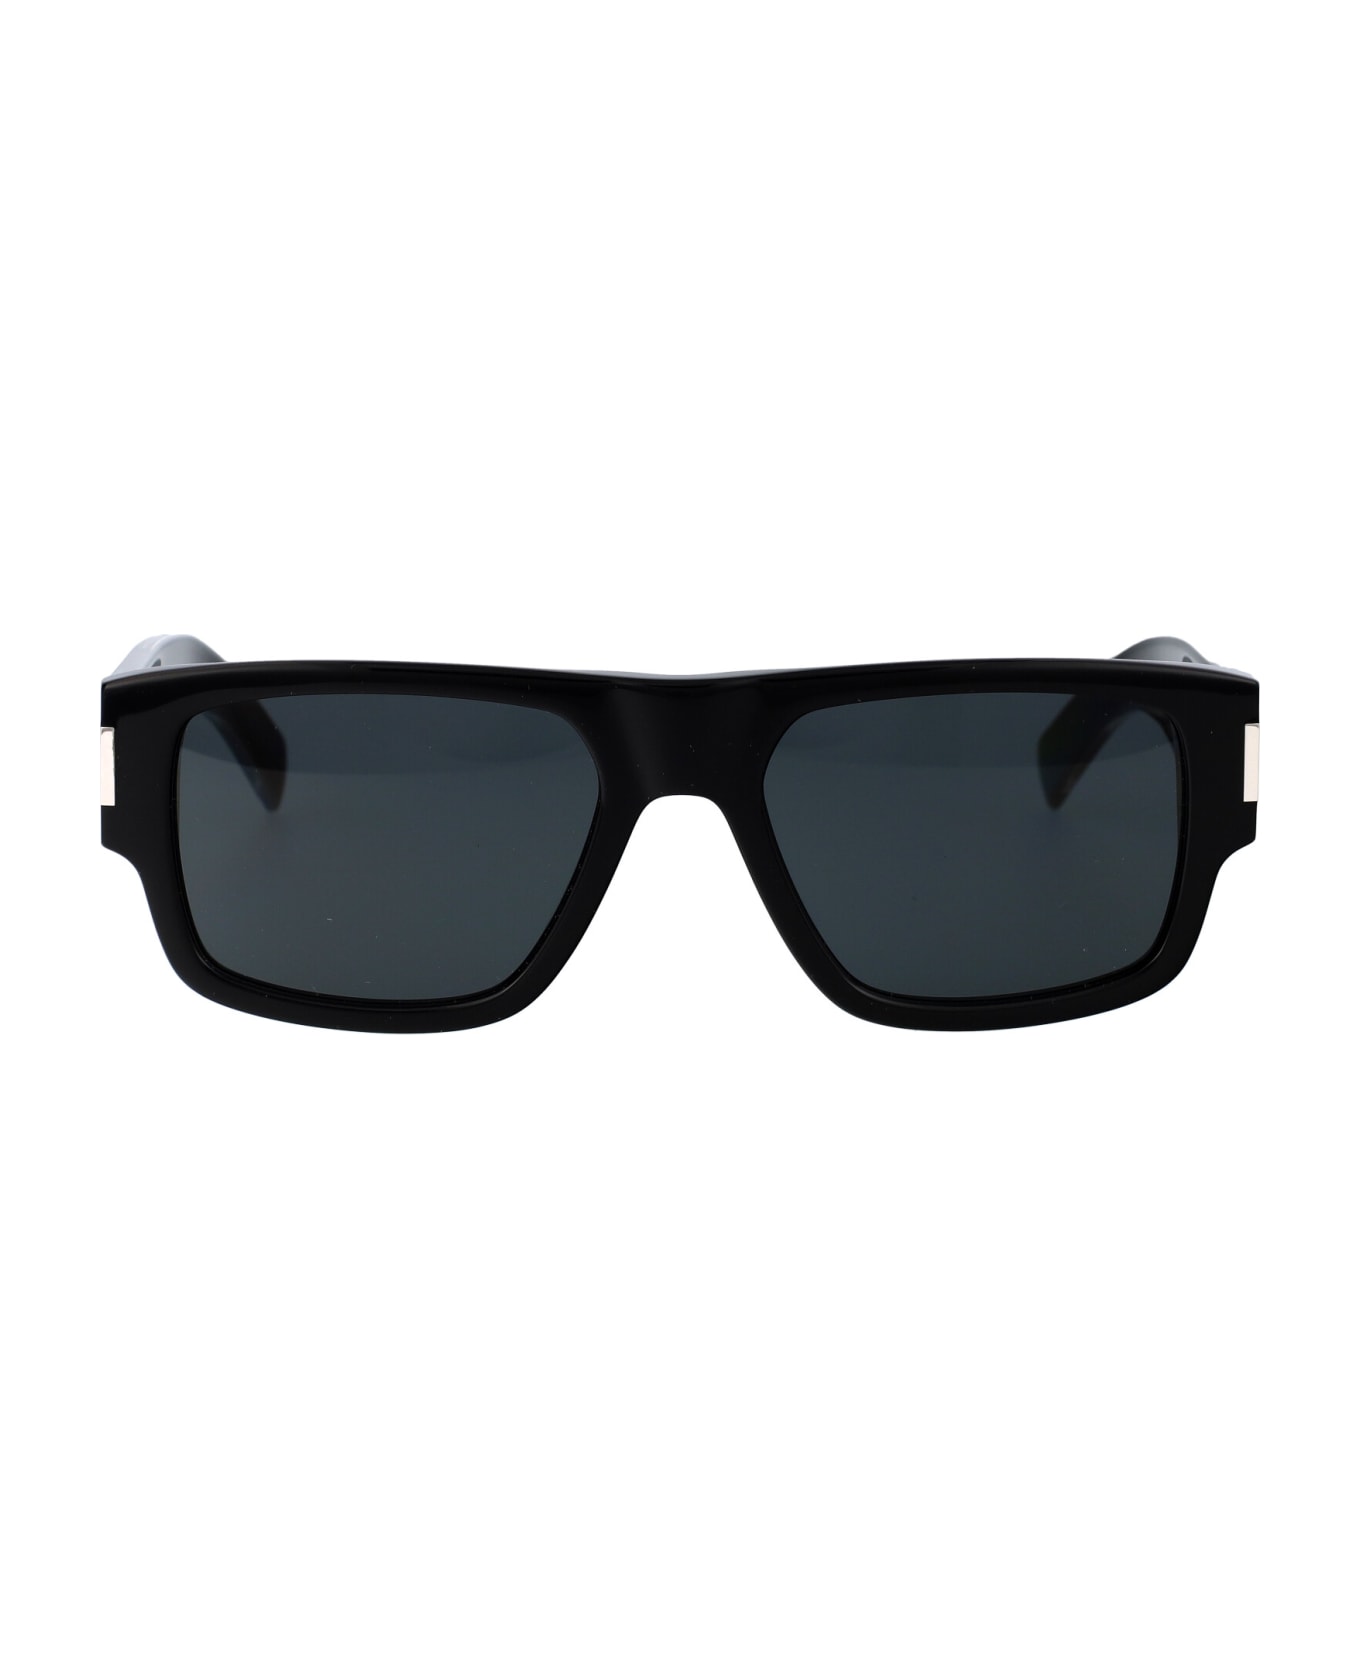 Saint Laurent Eyewear Sl 659 Sunglasses - 001 BLACK CRYSTAL BLACK